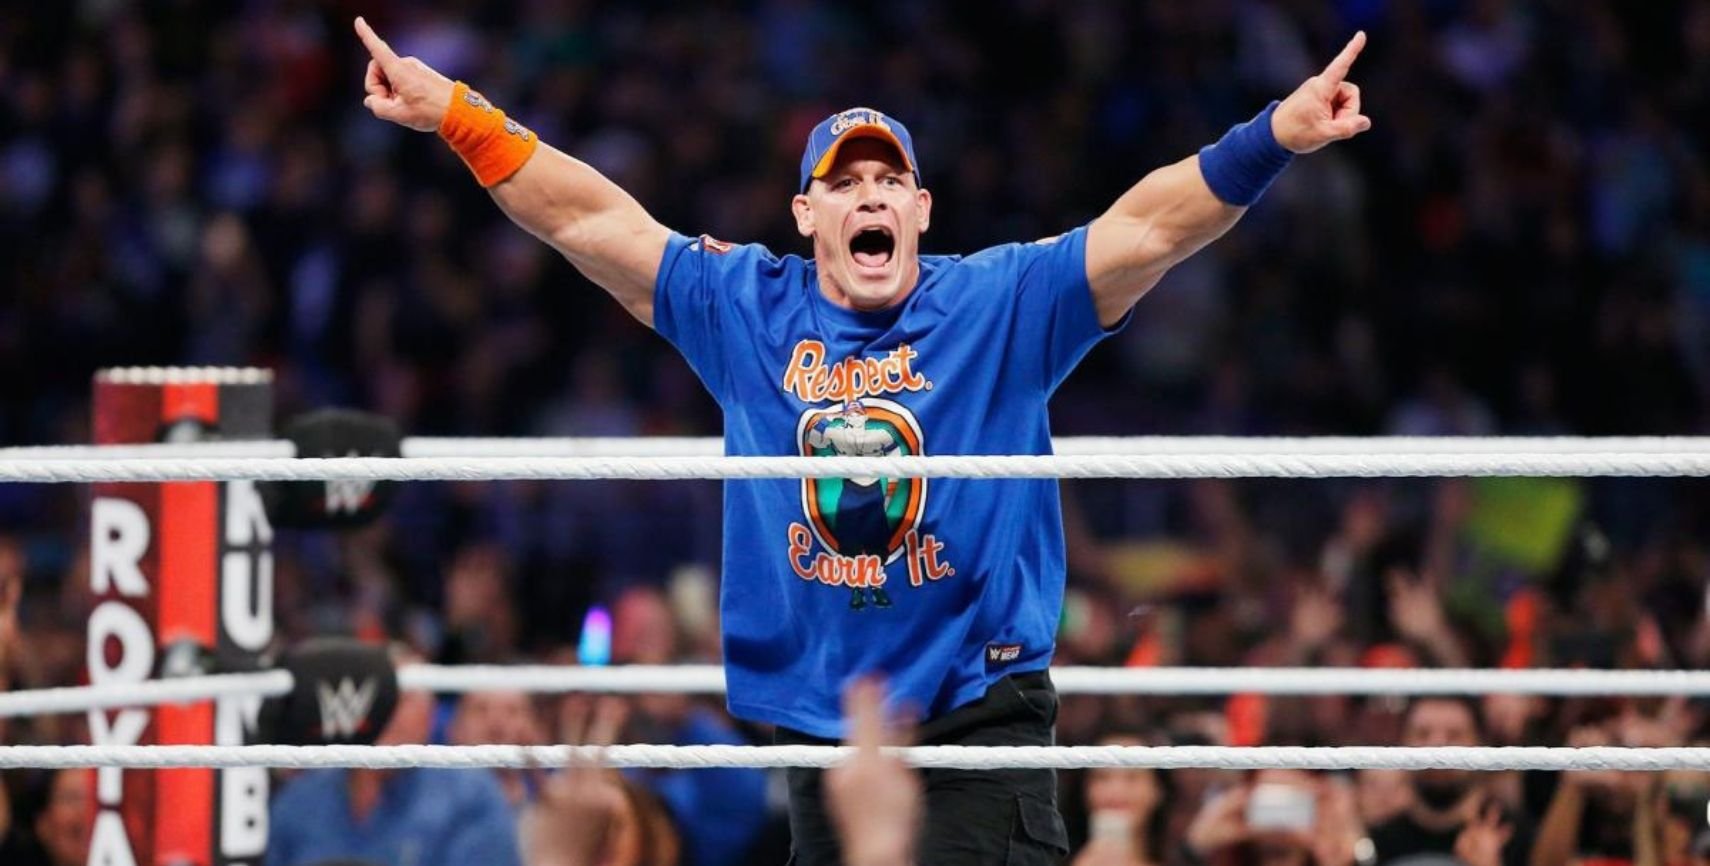 [Rumor] John Cena Could Return To Headline SummerSlam